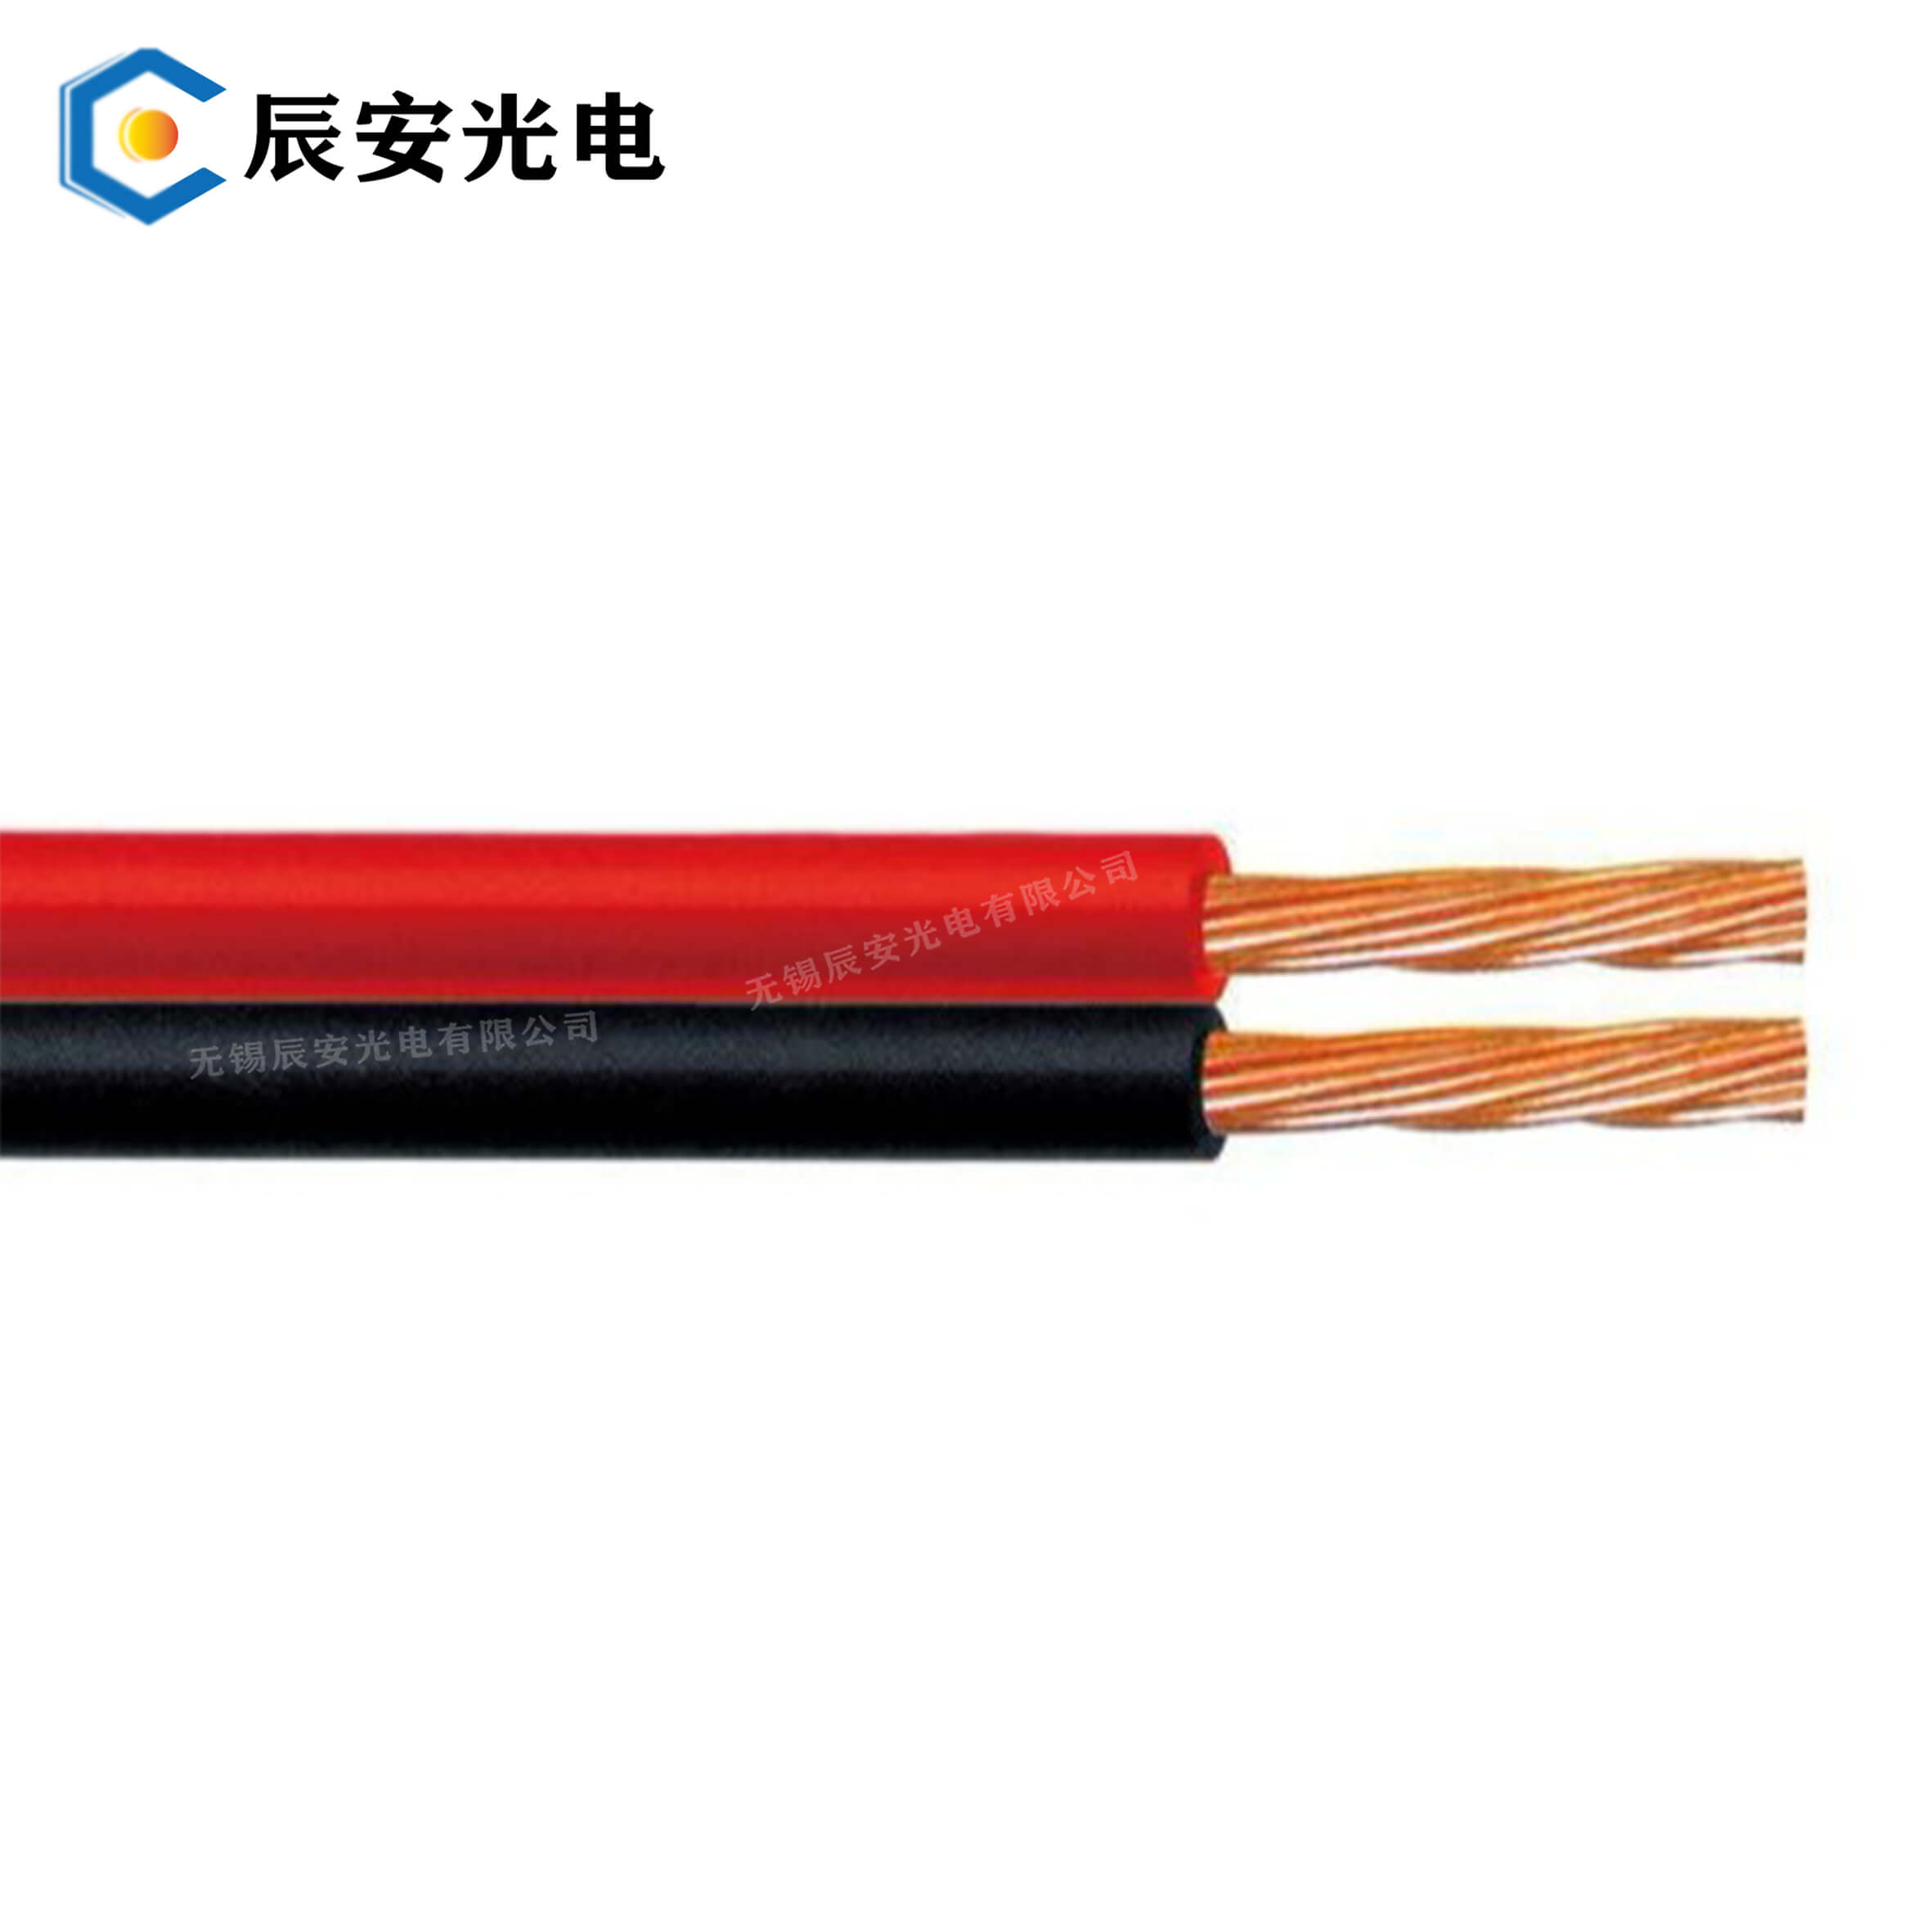 双并线 无氧纯铜平行线 可定制 无锡辰安线缆厂家